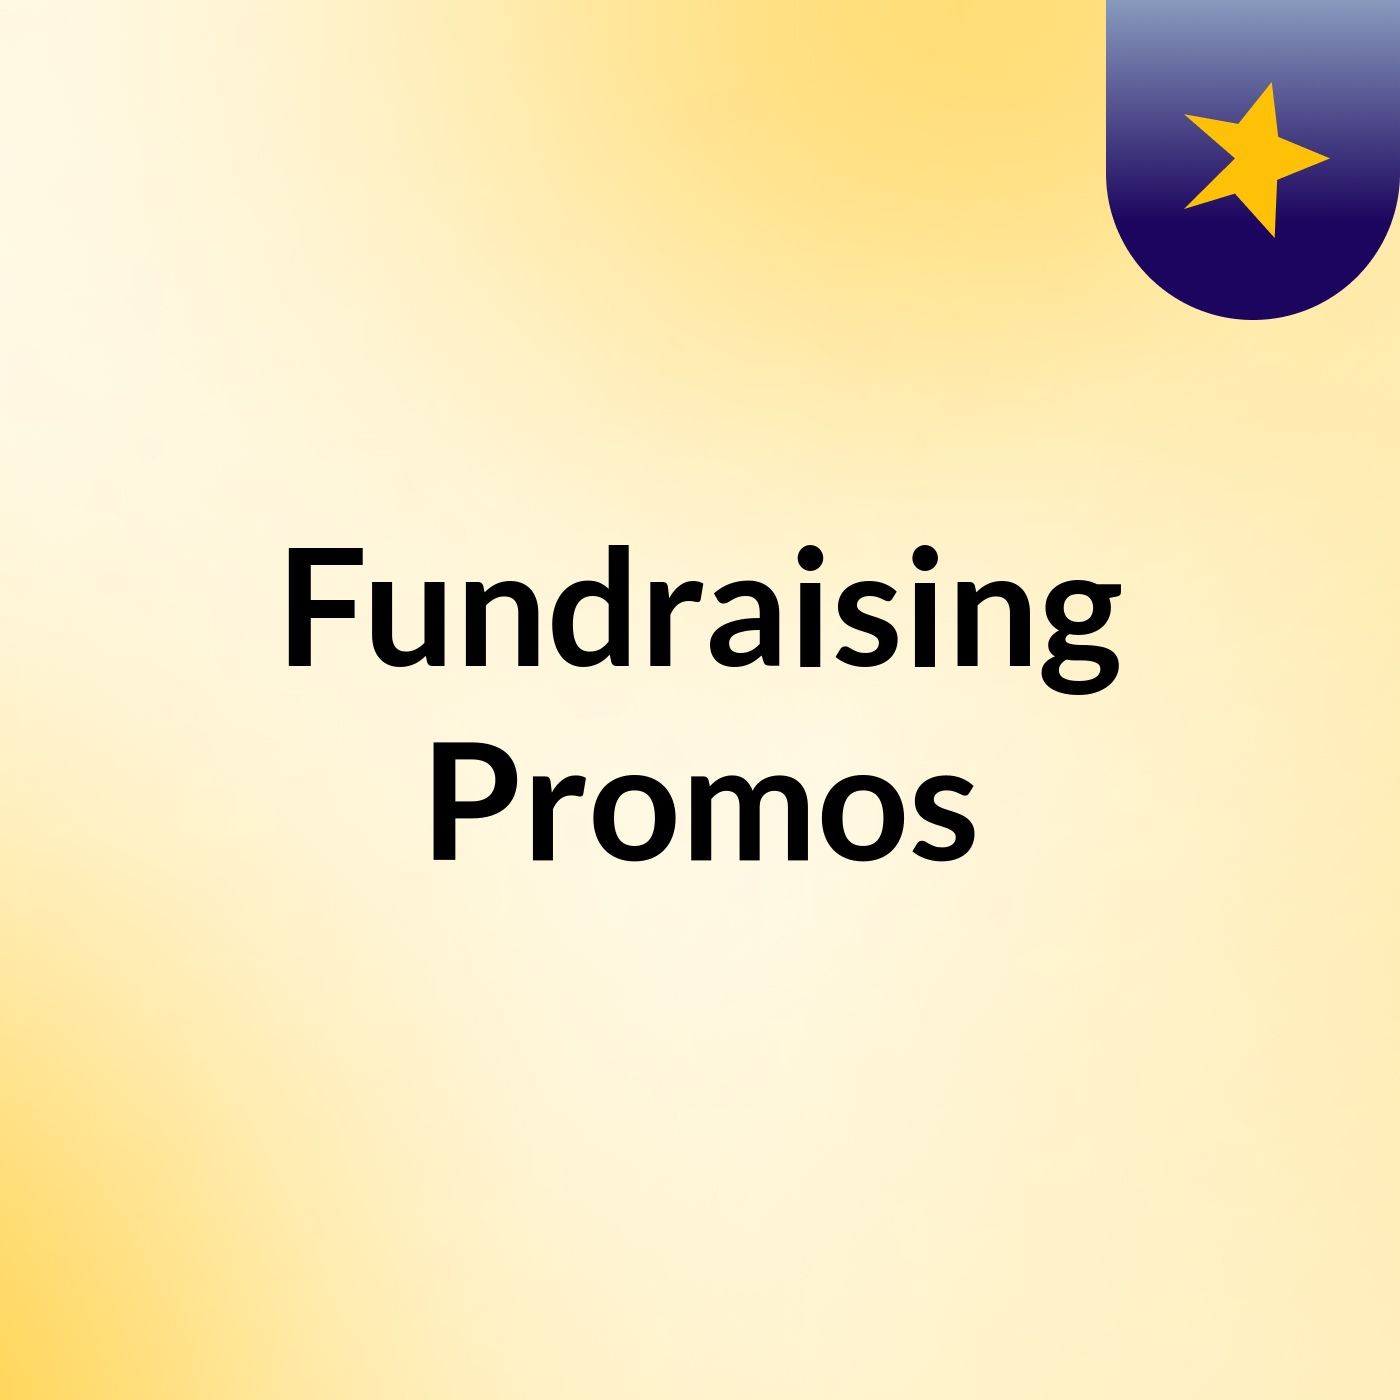 Fundraising Promos